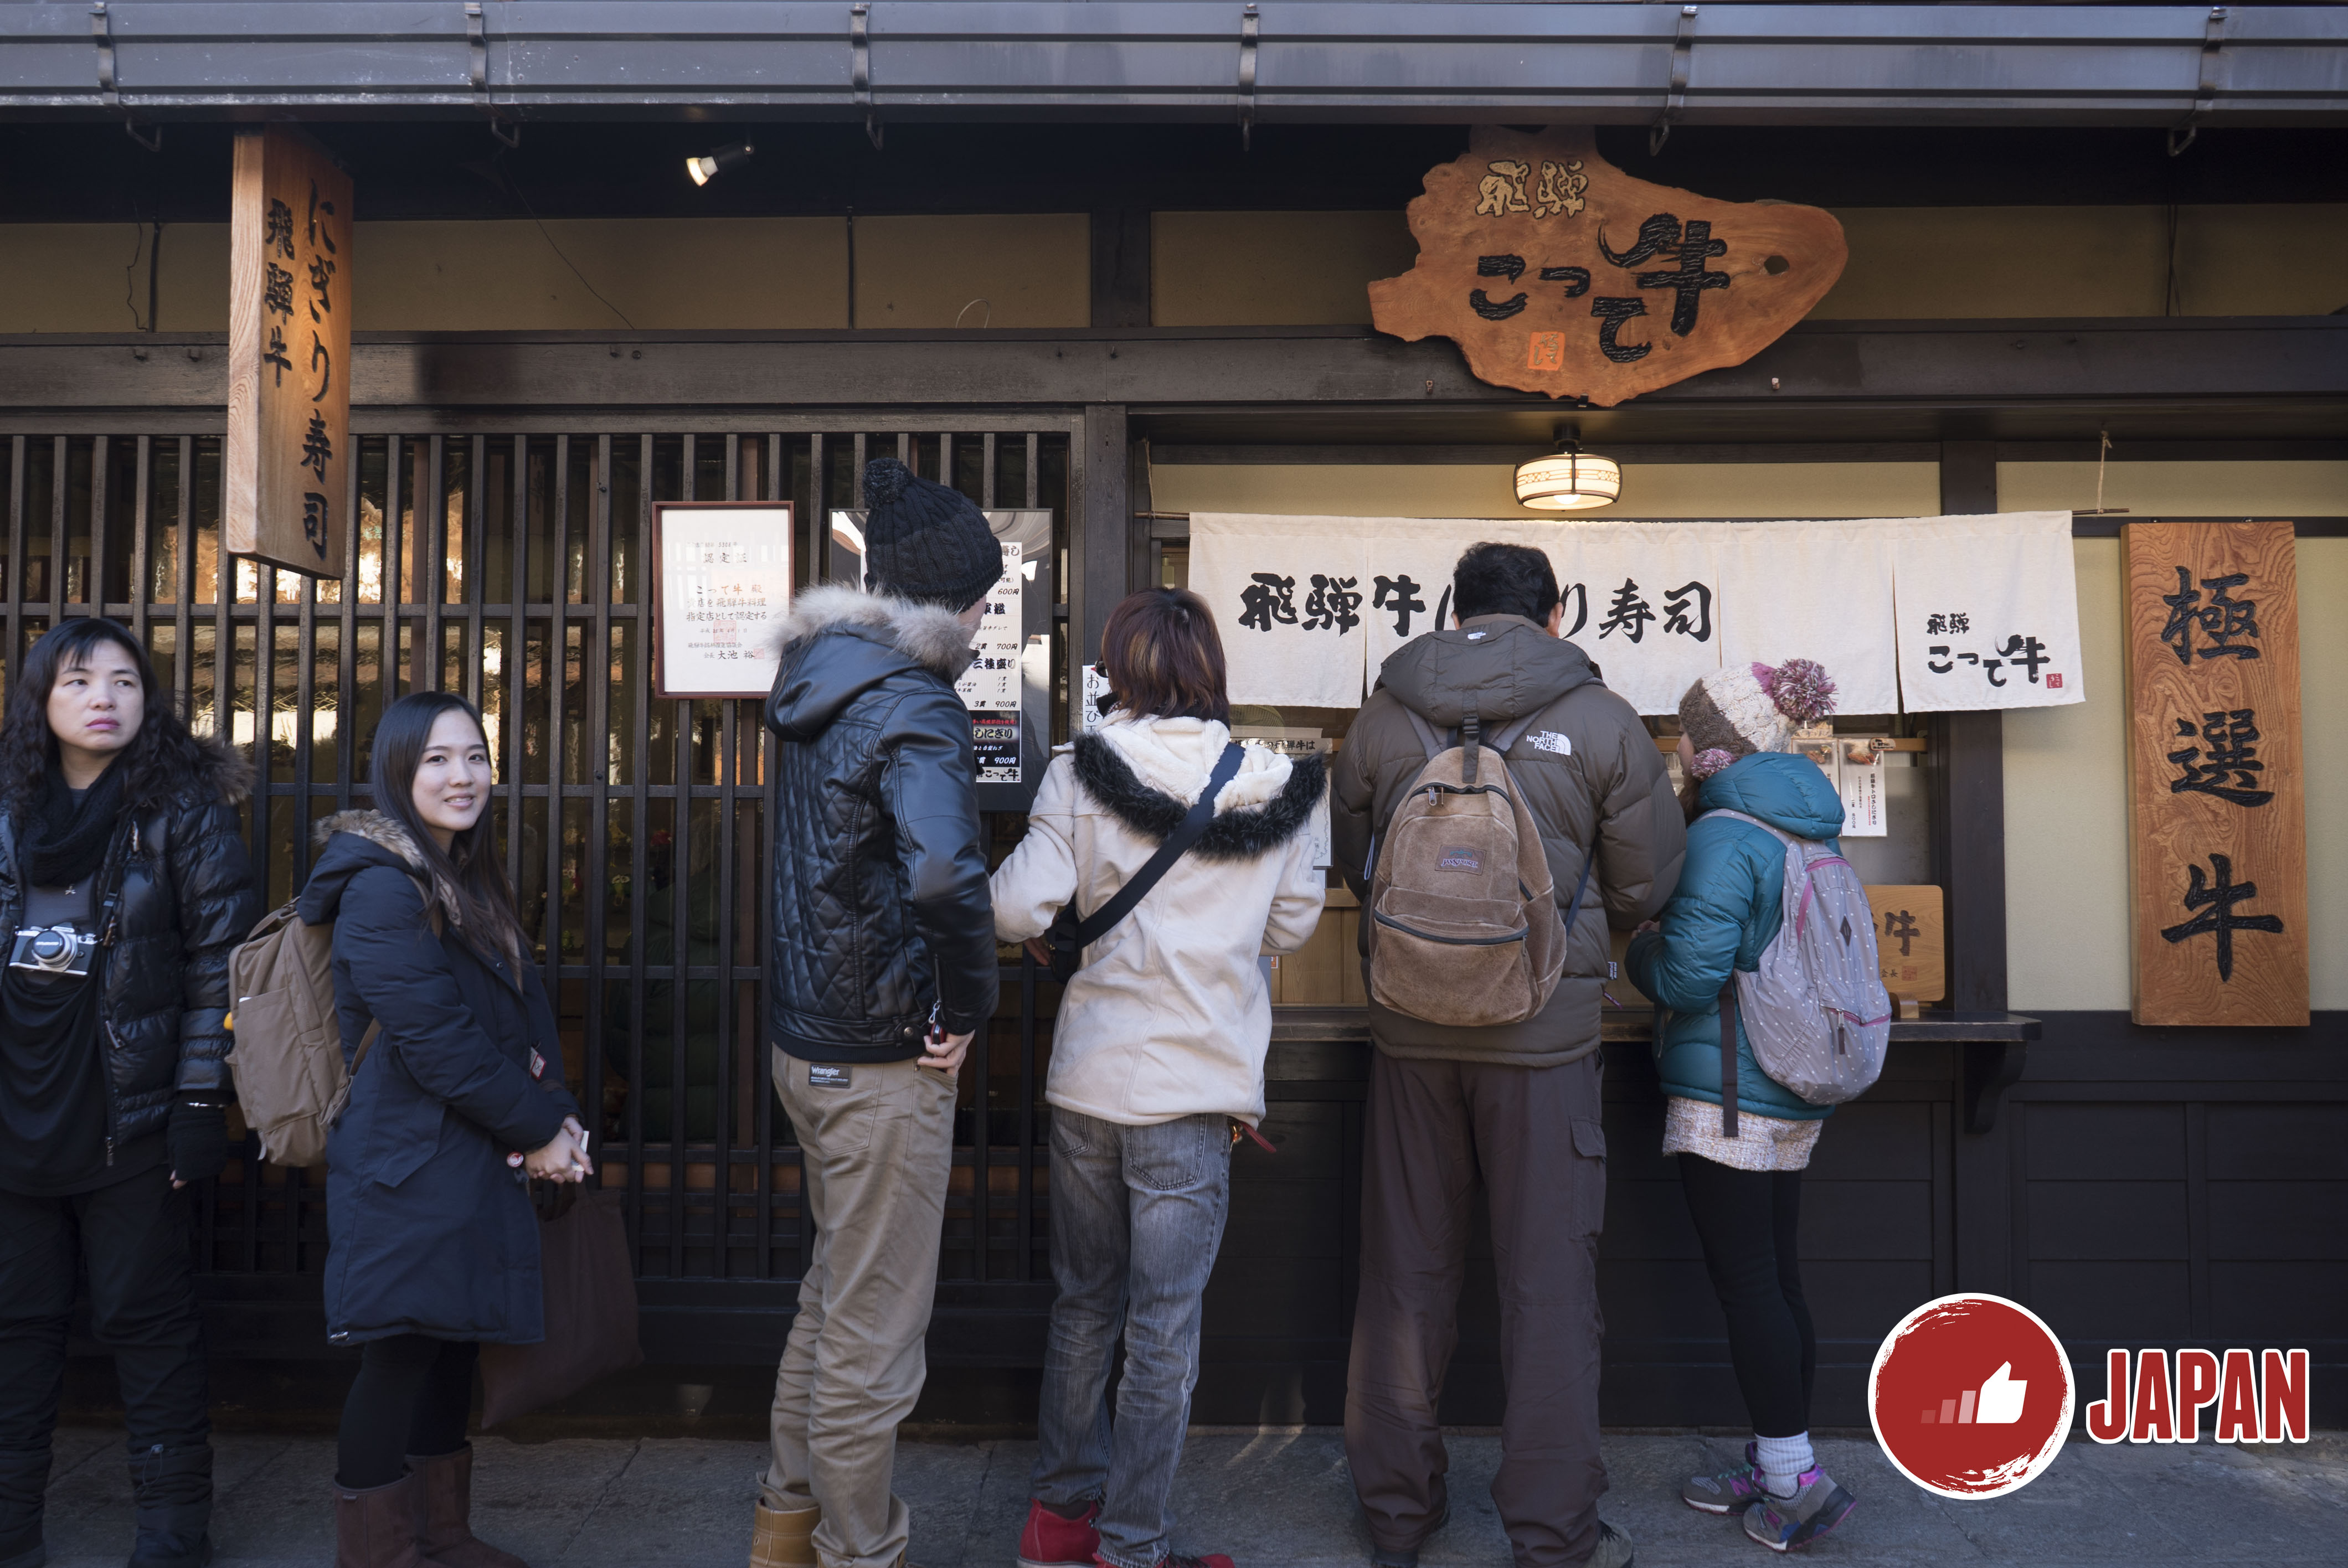 【貝遊日本】高山&白川鄉點燈LOCAL TOUR (PART 1) 之究竟飛驒牛壽司有幾好味！？